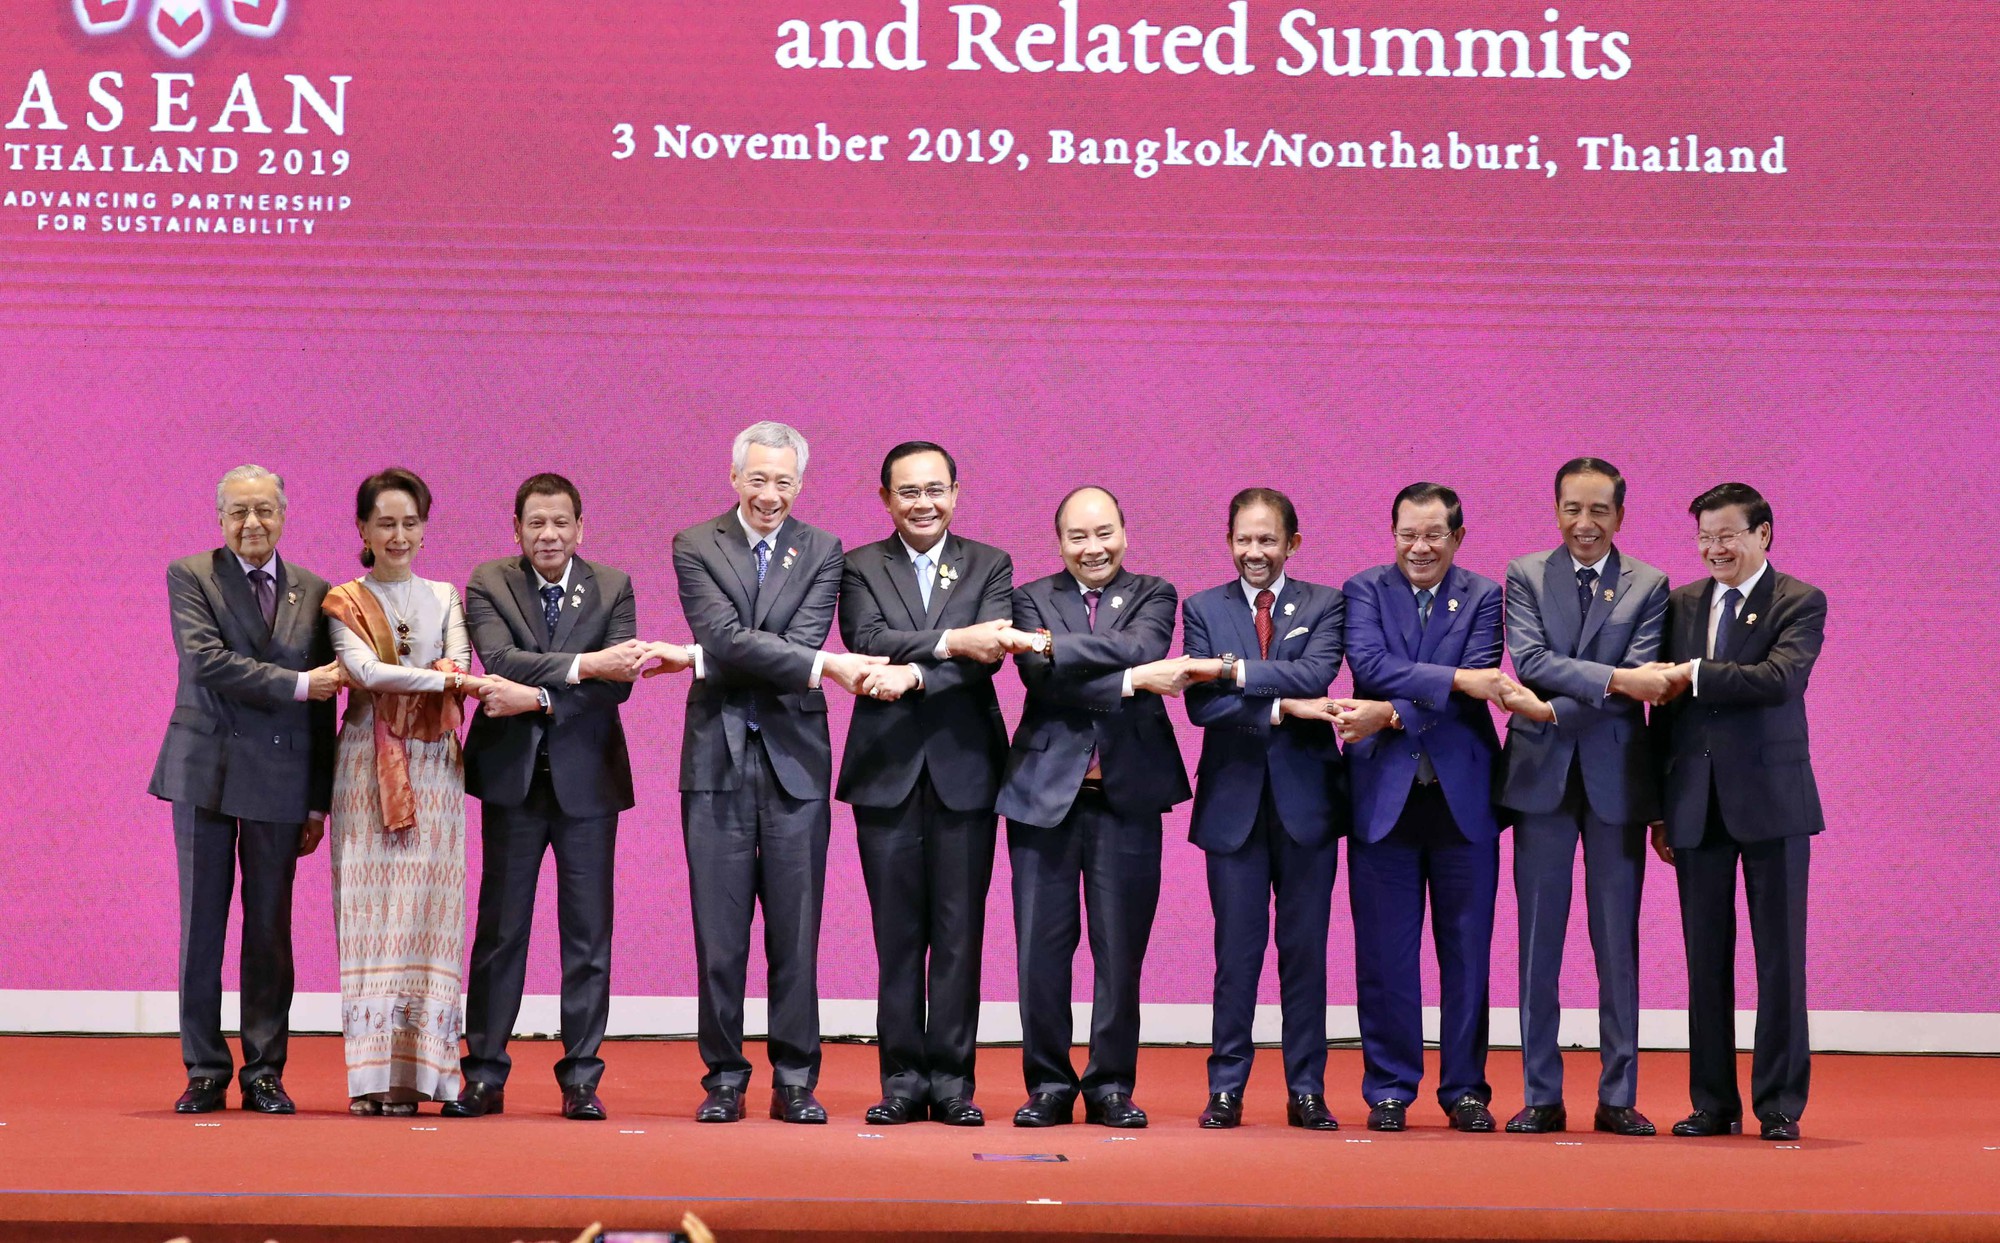 Chùm ảnh: Thủ tướng dự Hội nghị cấp cao ASEAN và gặp lãnh đạo các nước - Ảnh 1.